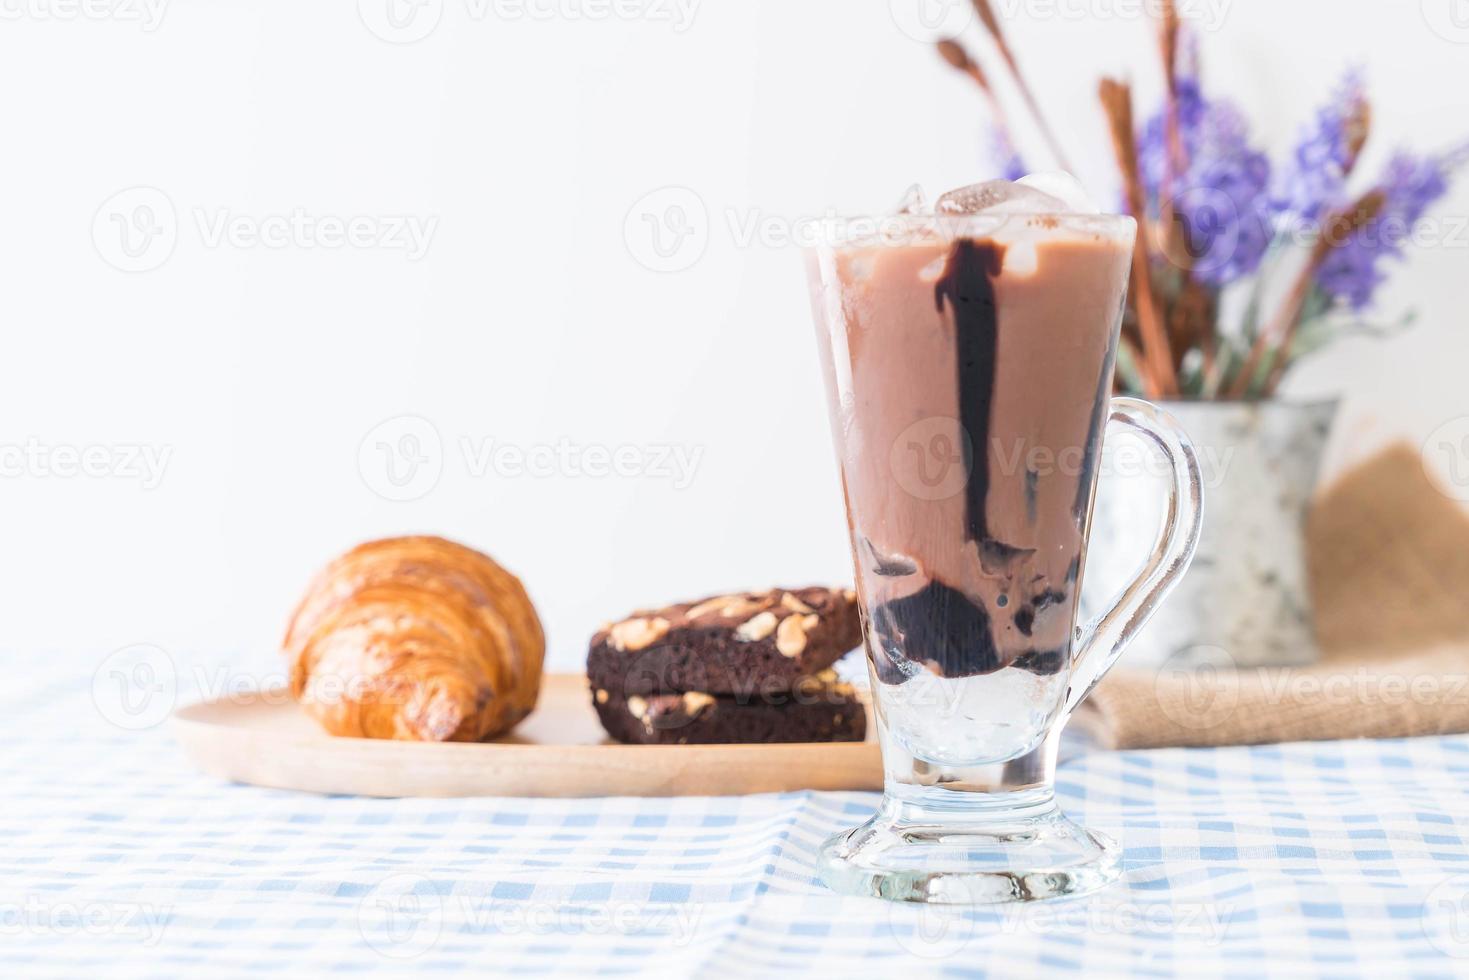 ischoklad på bordet foto